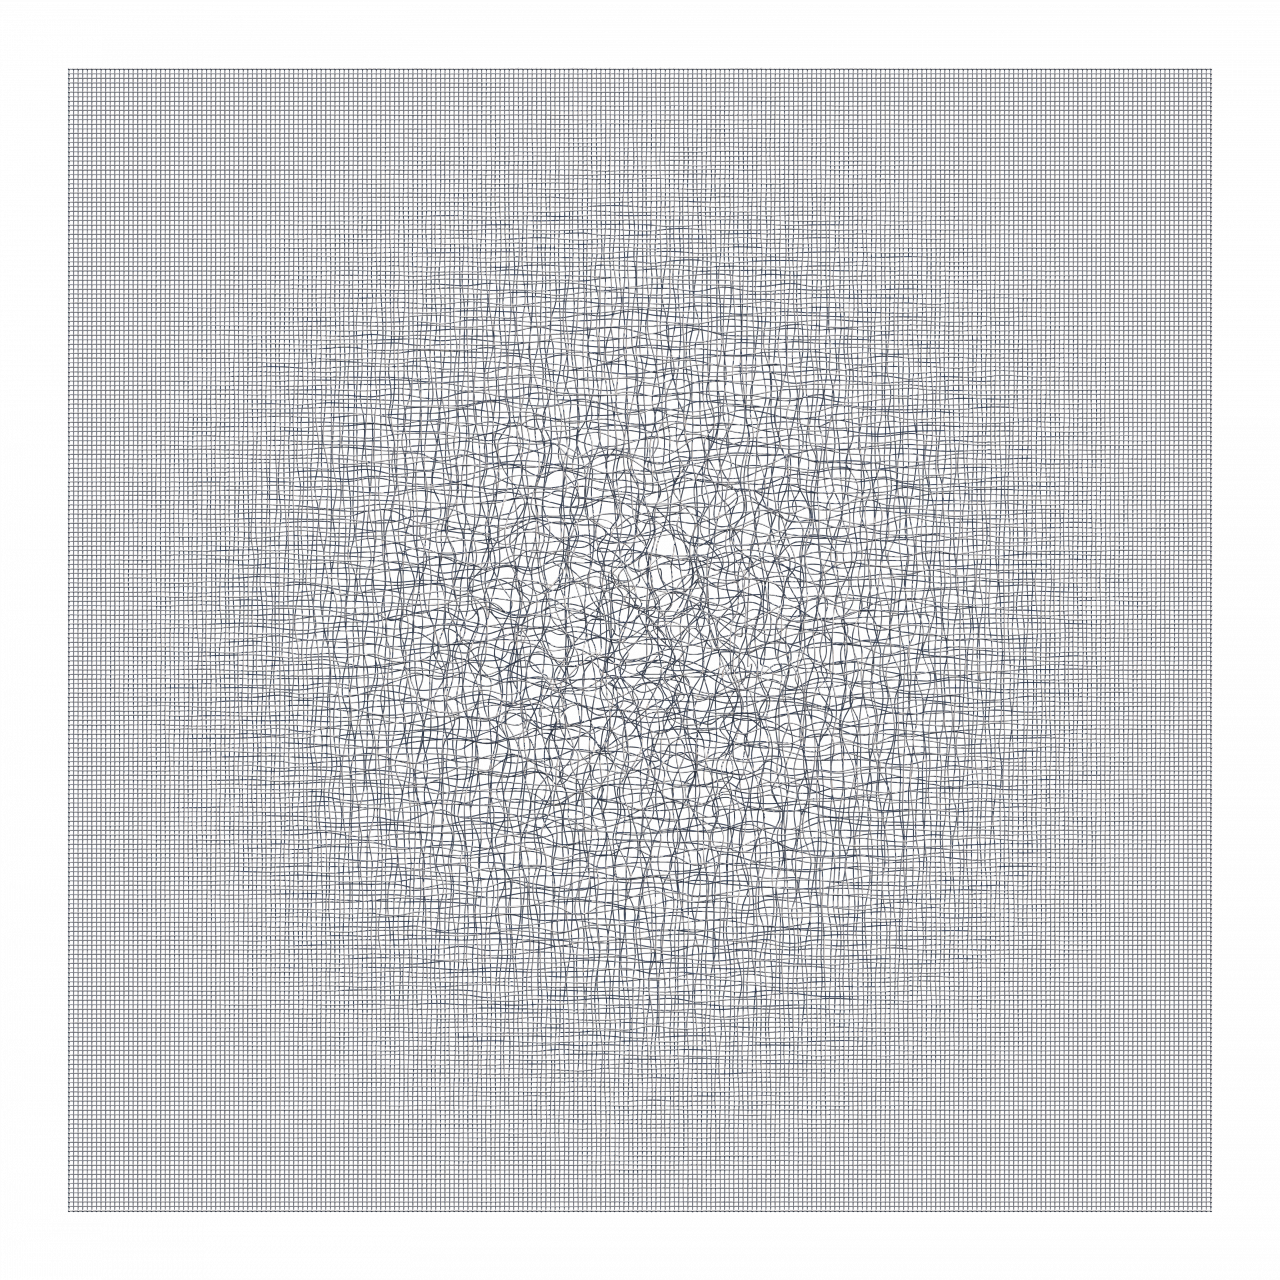 Visualisierung eines Netzwerks aus unzähligen feinen grauen Linien